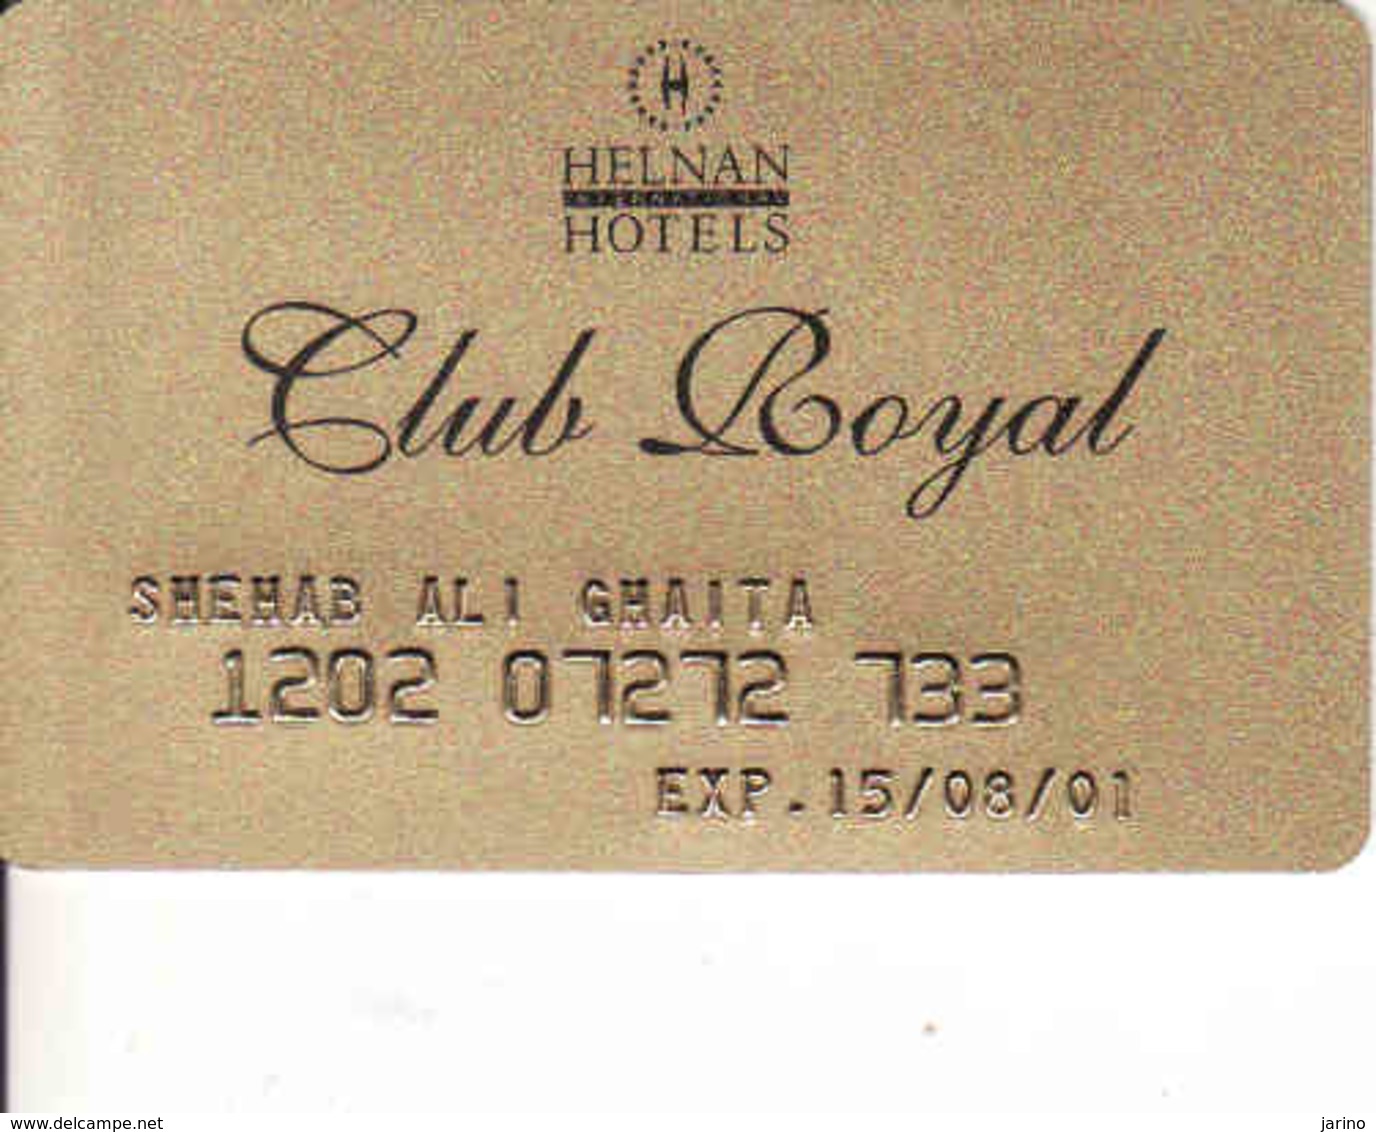 Hotel Keycard Egypt, Helnan Hotel Club Royal - Cartes D'hotel